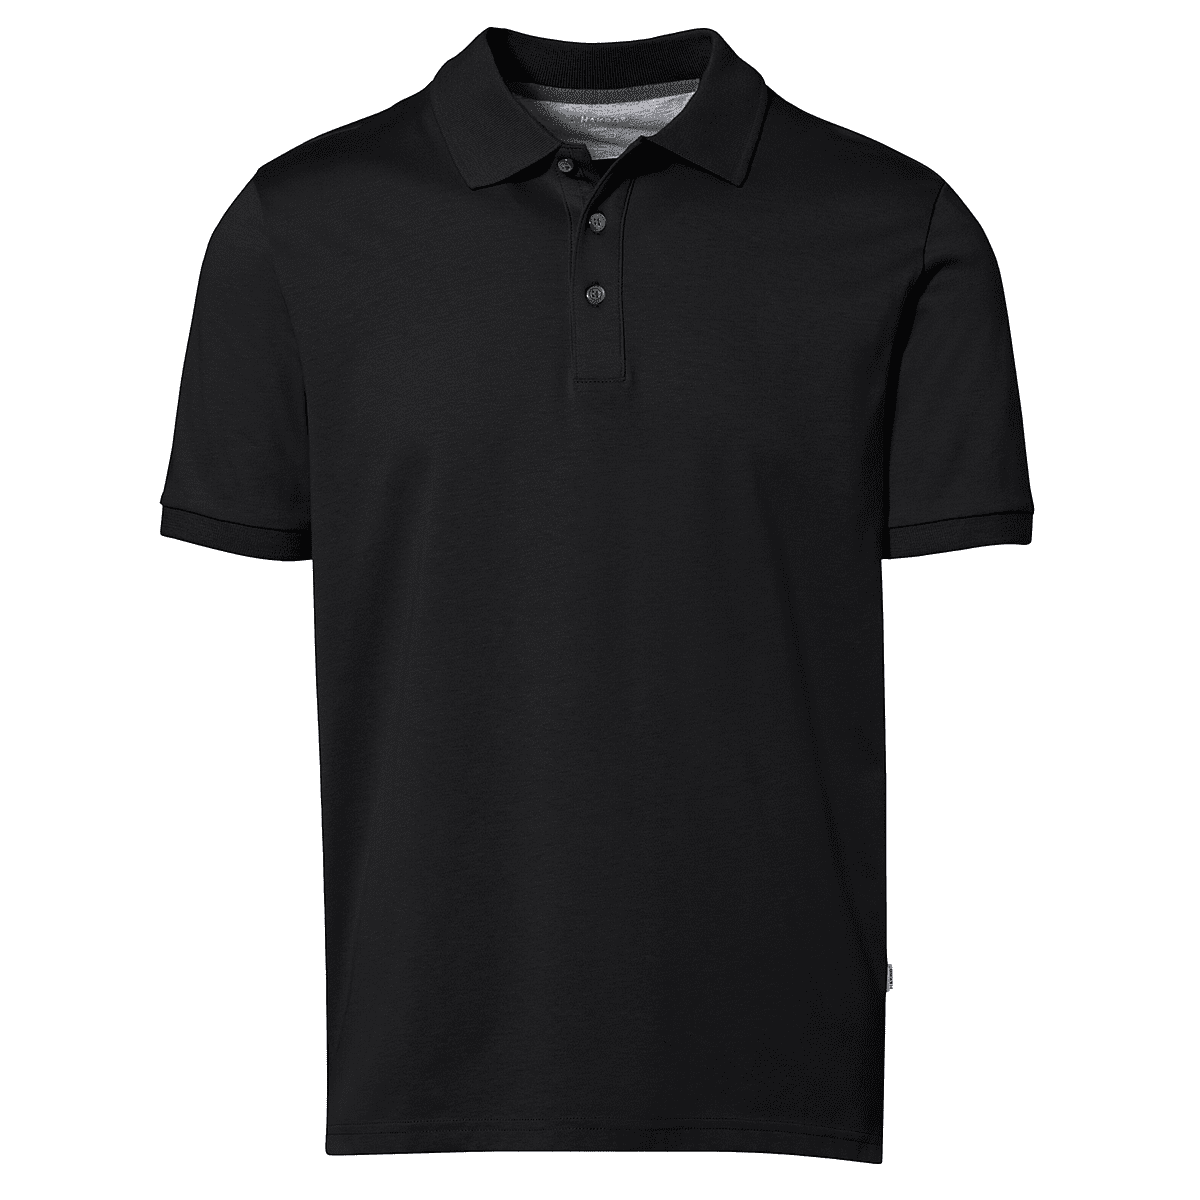 Herren Polo-Shirt Funktion schwarz